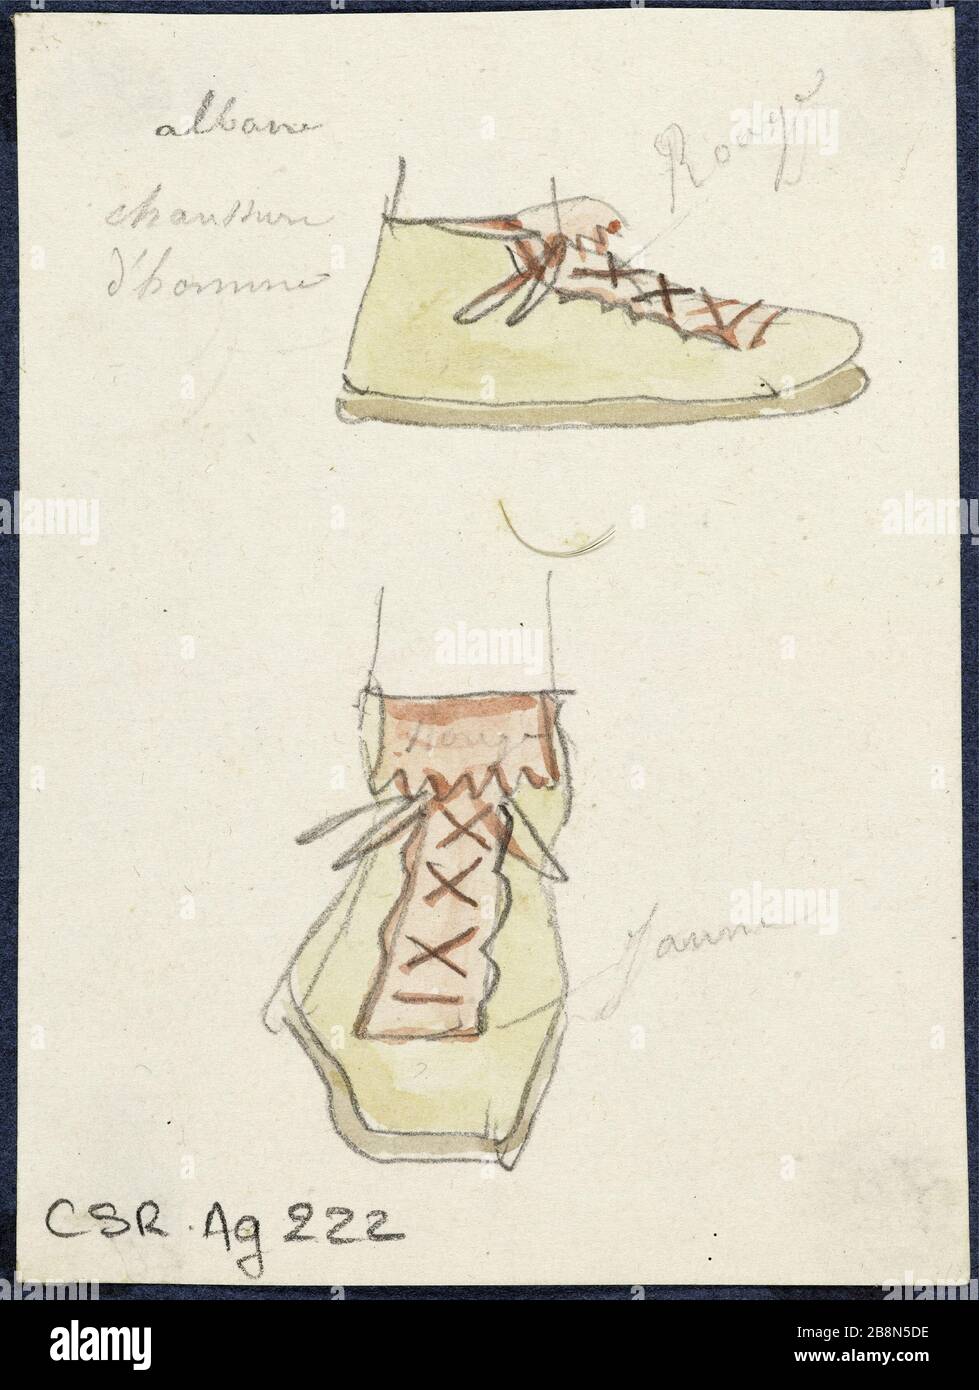 Man Shoes (Albano) René Marjolin (1812-1895). Chaussures d'homme (Albane). Crayon Graphit et aquarelle. Paris, musée de la Vie romantique. Stockfoto